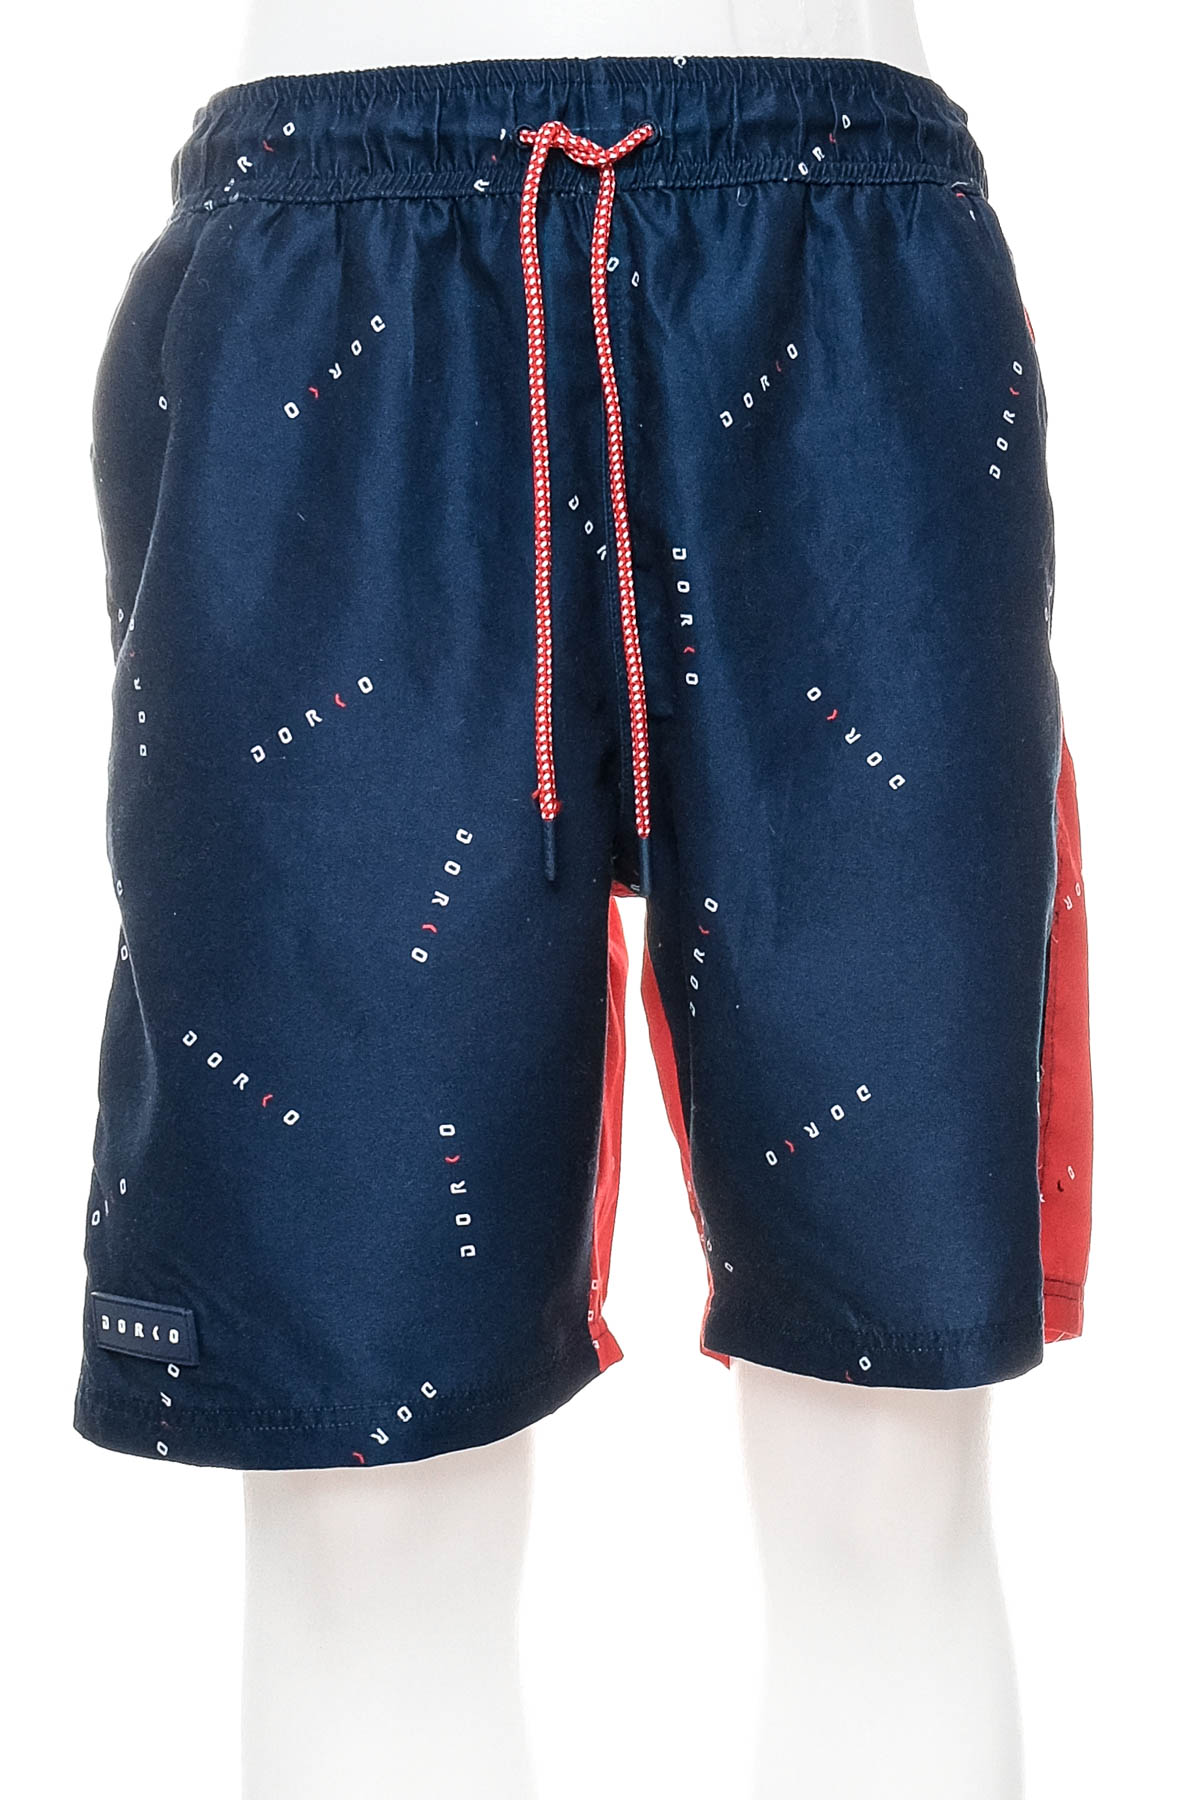 Men's shorts - Dorko - 0